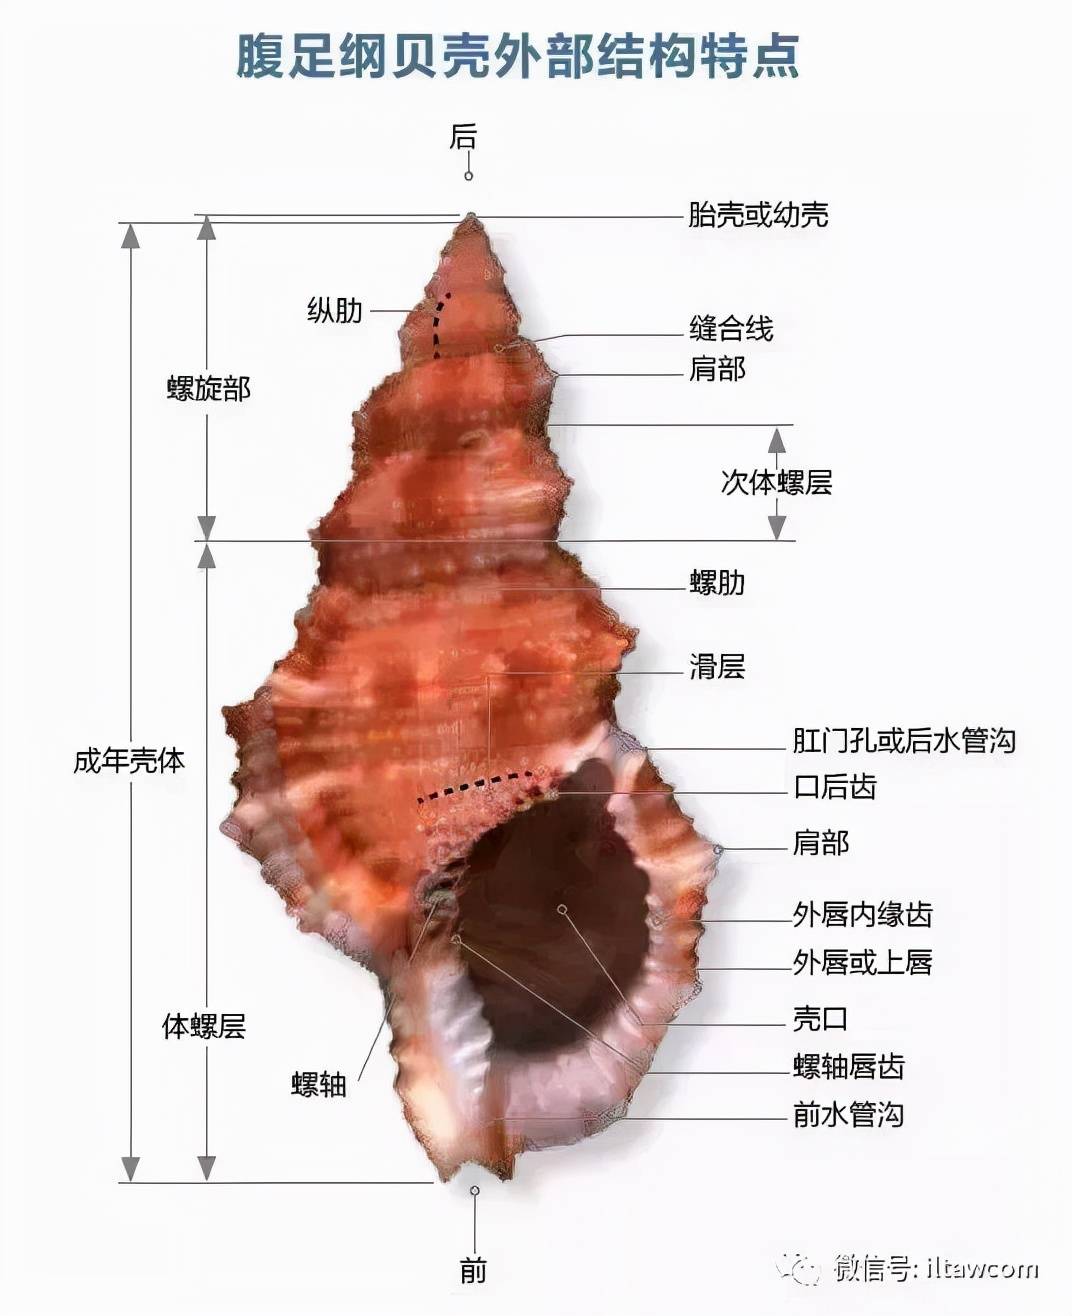 观往知来 | 贝壳和贝壳的制造者（二）：贝类动物的分类学